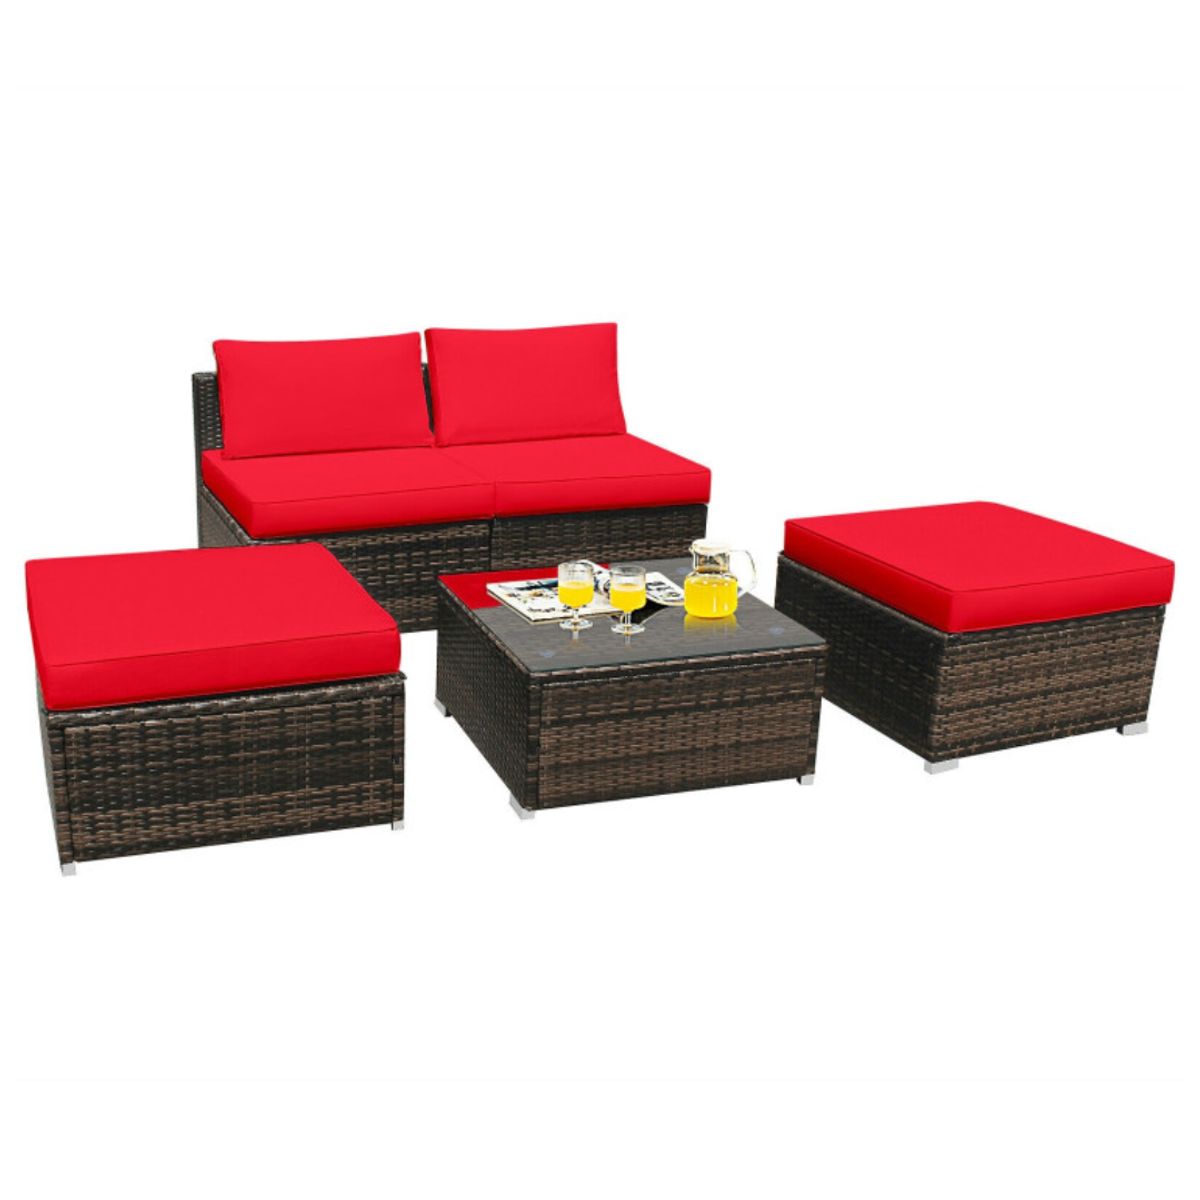 Photos - Garden Furniture Costway 4-Piece Rattan Wicker Furniture Set - Red HW66745RE+ 